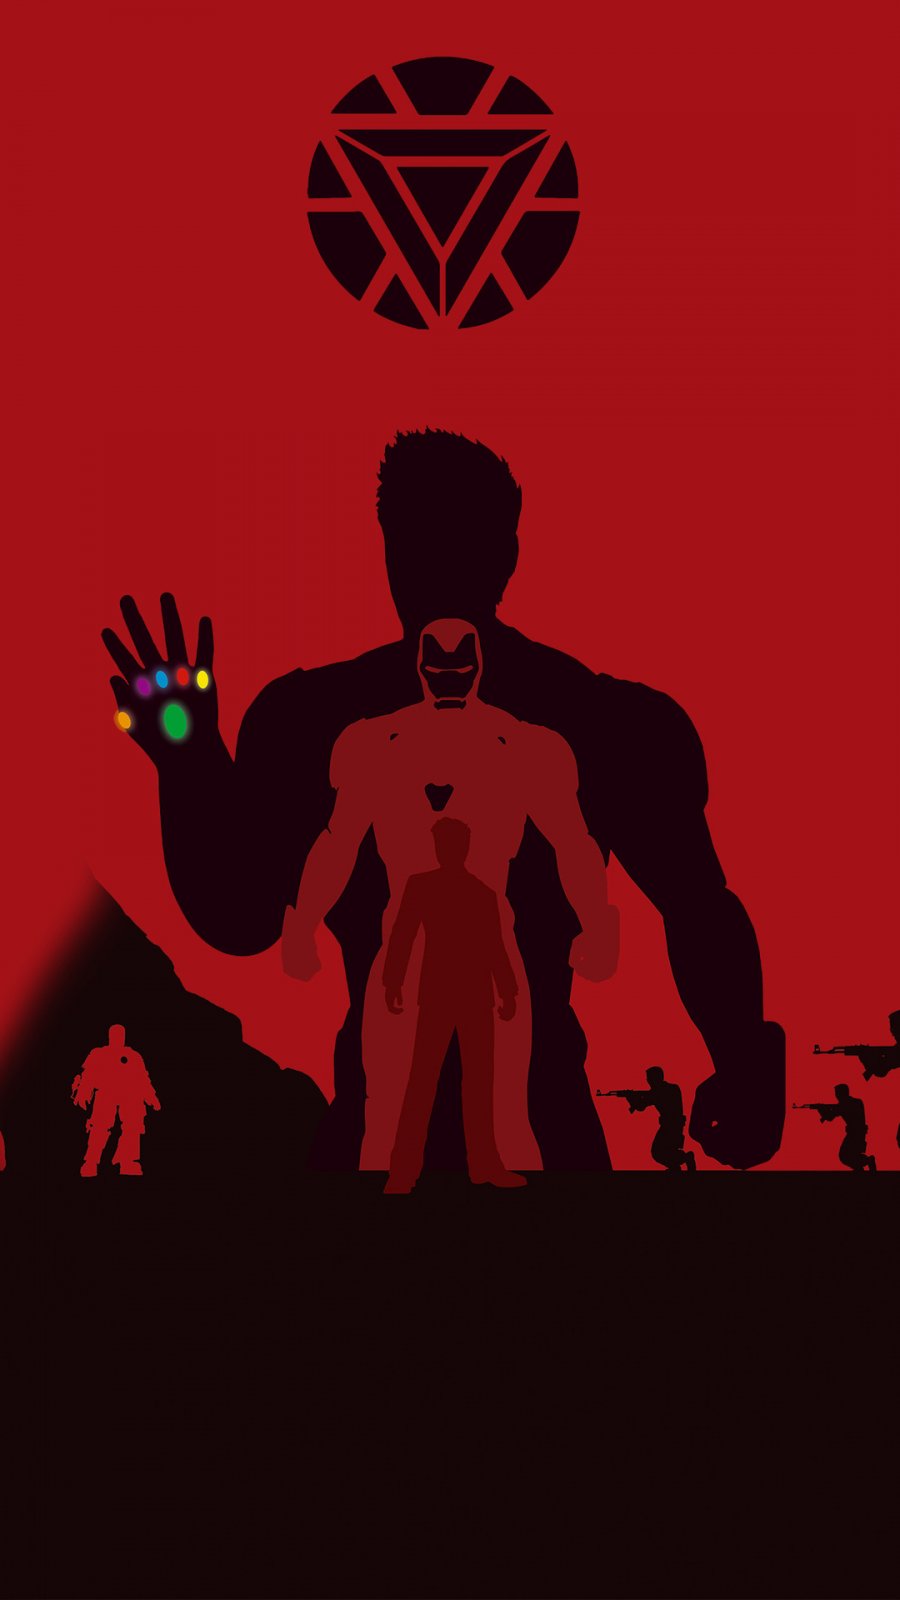 Iron Man Avengers Endgame 4k Minimalism IPhone Wallpaper Wallpaper, iPhone Wallpaper